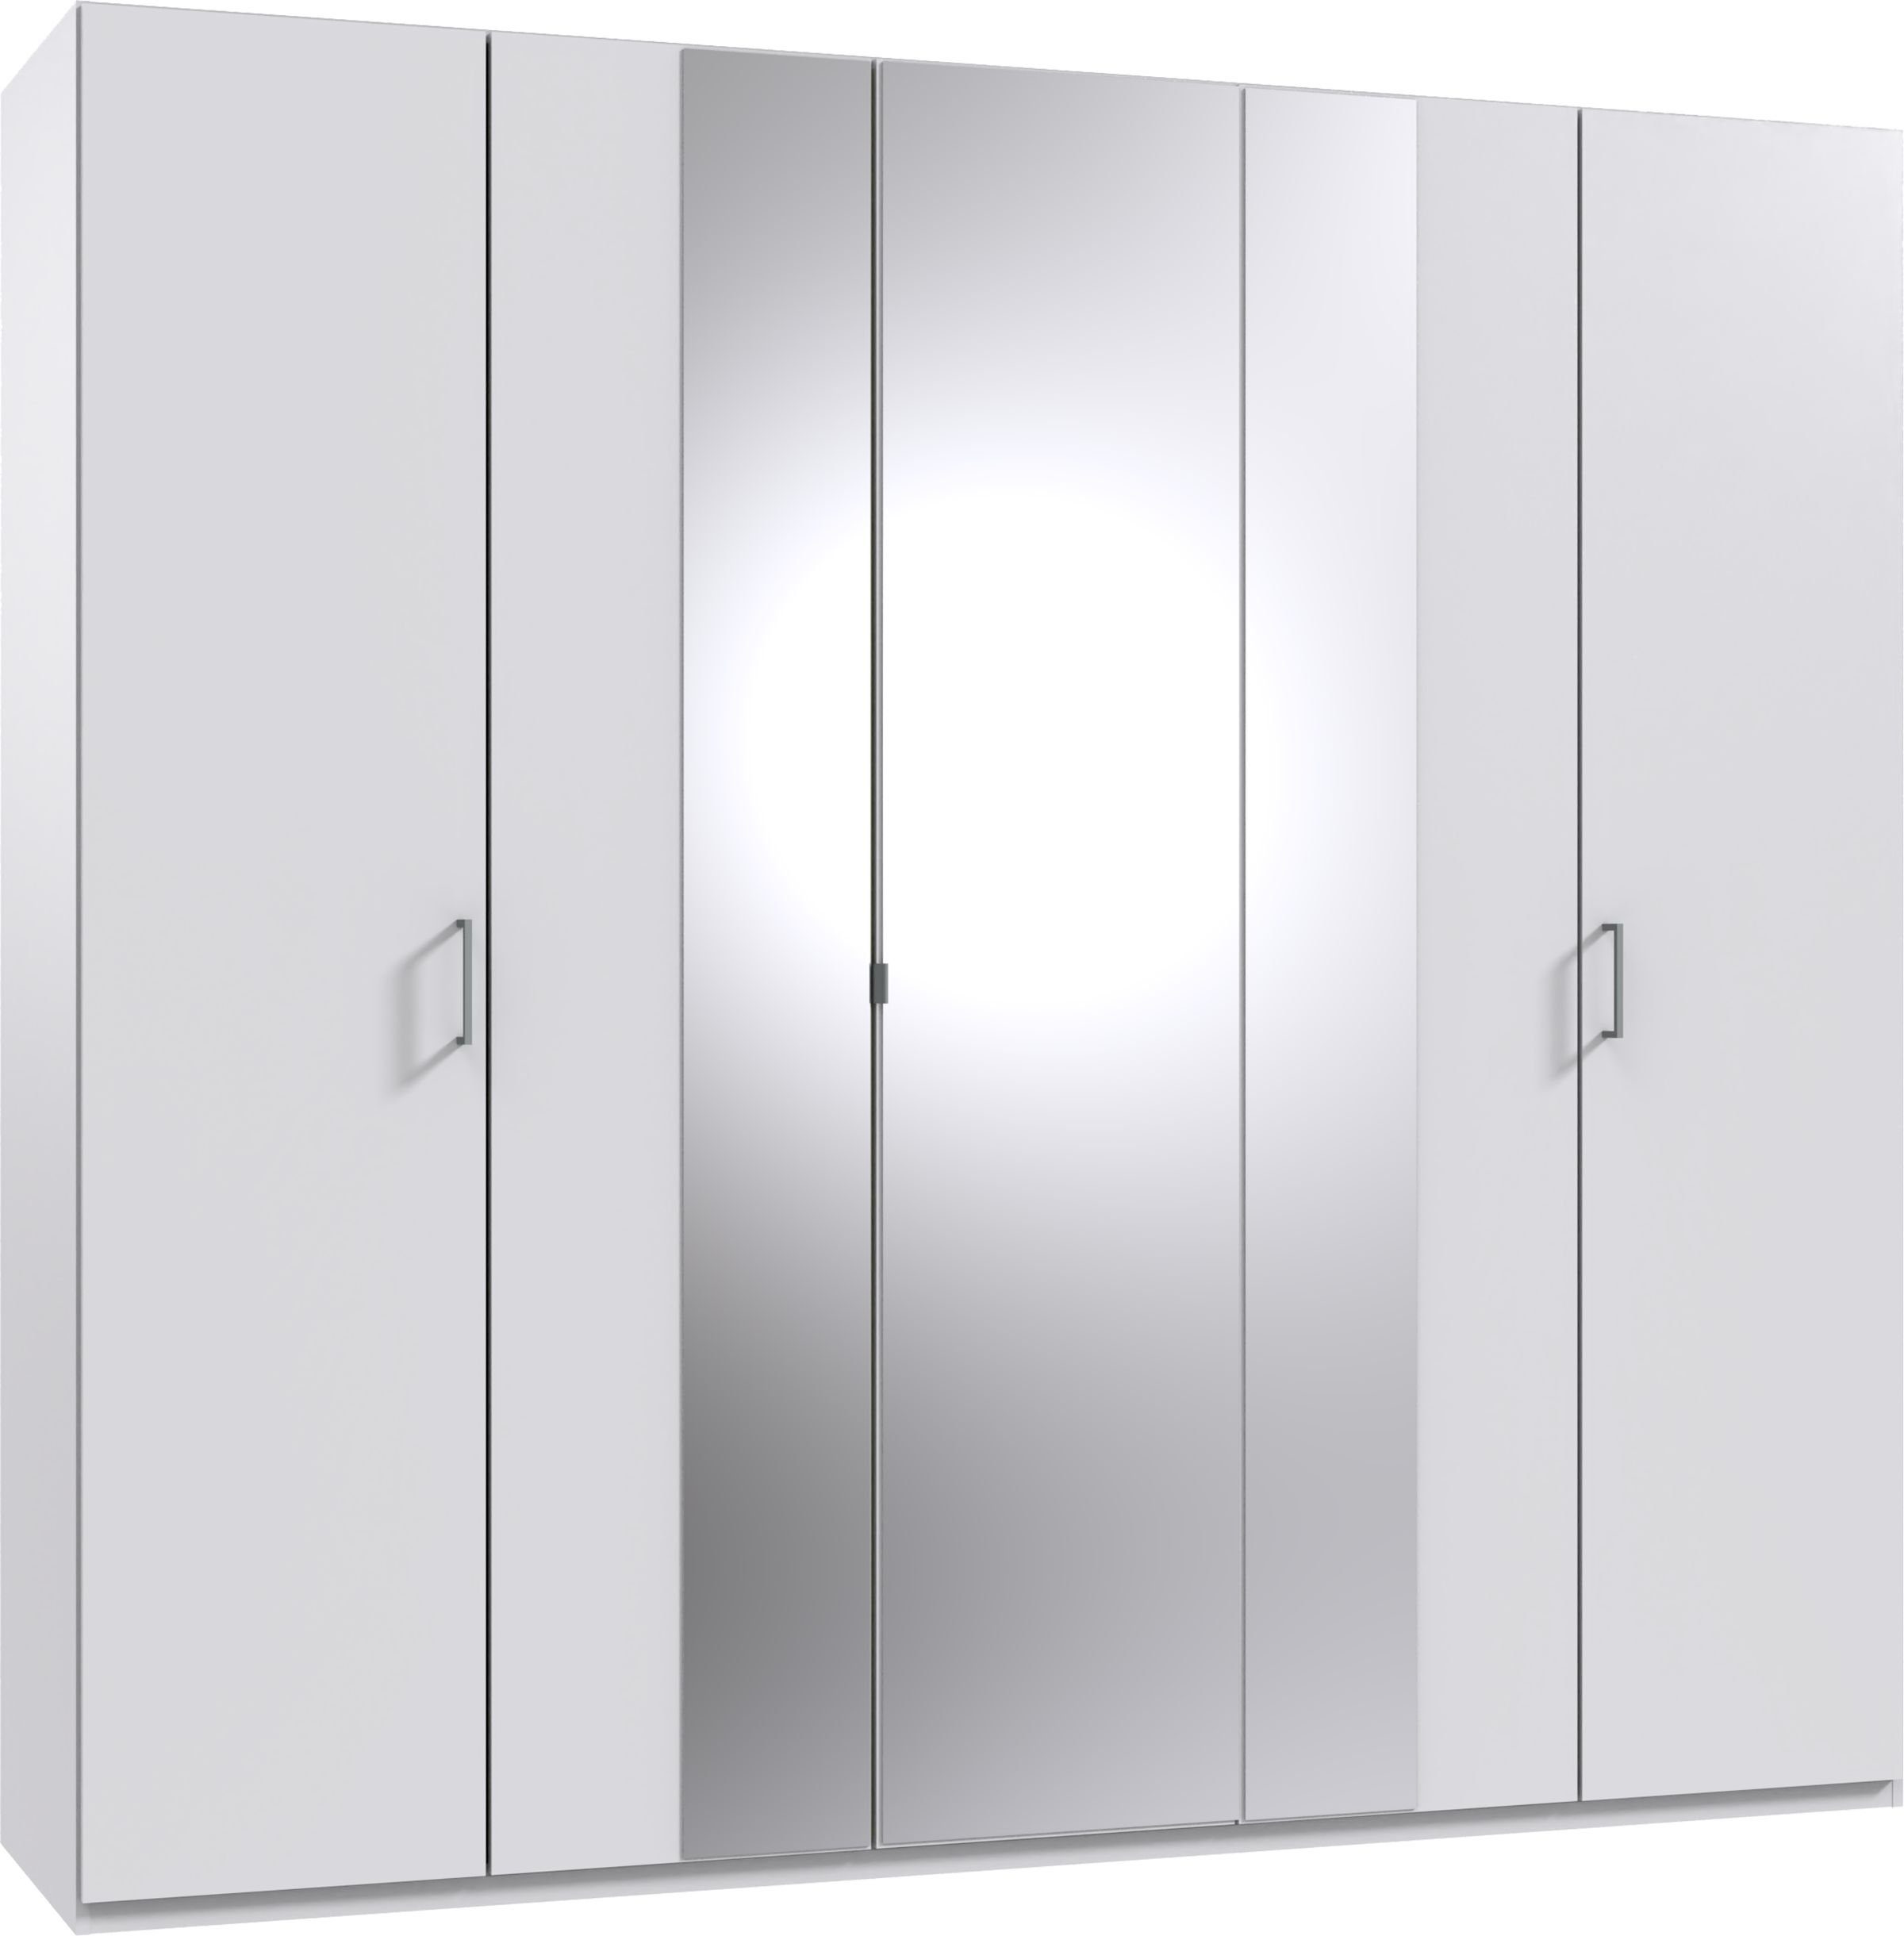 Wimex Drehtürenschrank Kreta mit Spiegeltüren, 225cm breit Weiß | Weiß